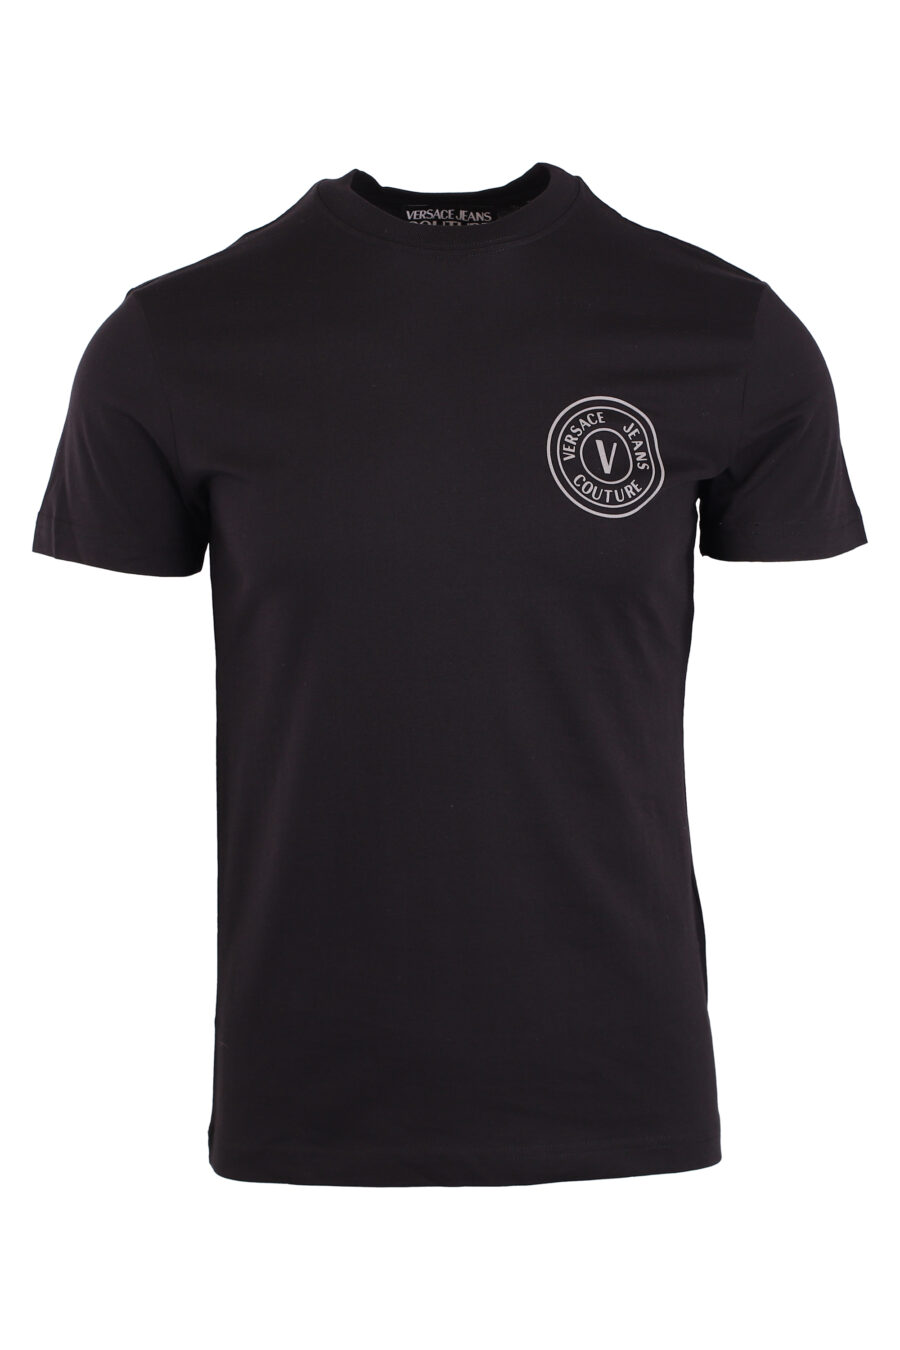 T-shirt noir avec logo circulaire gris - IMG 8944